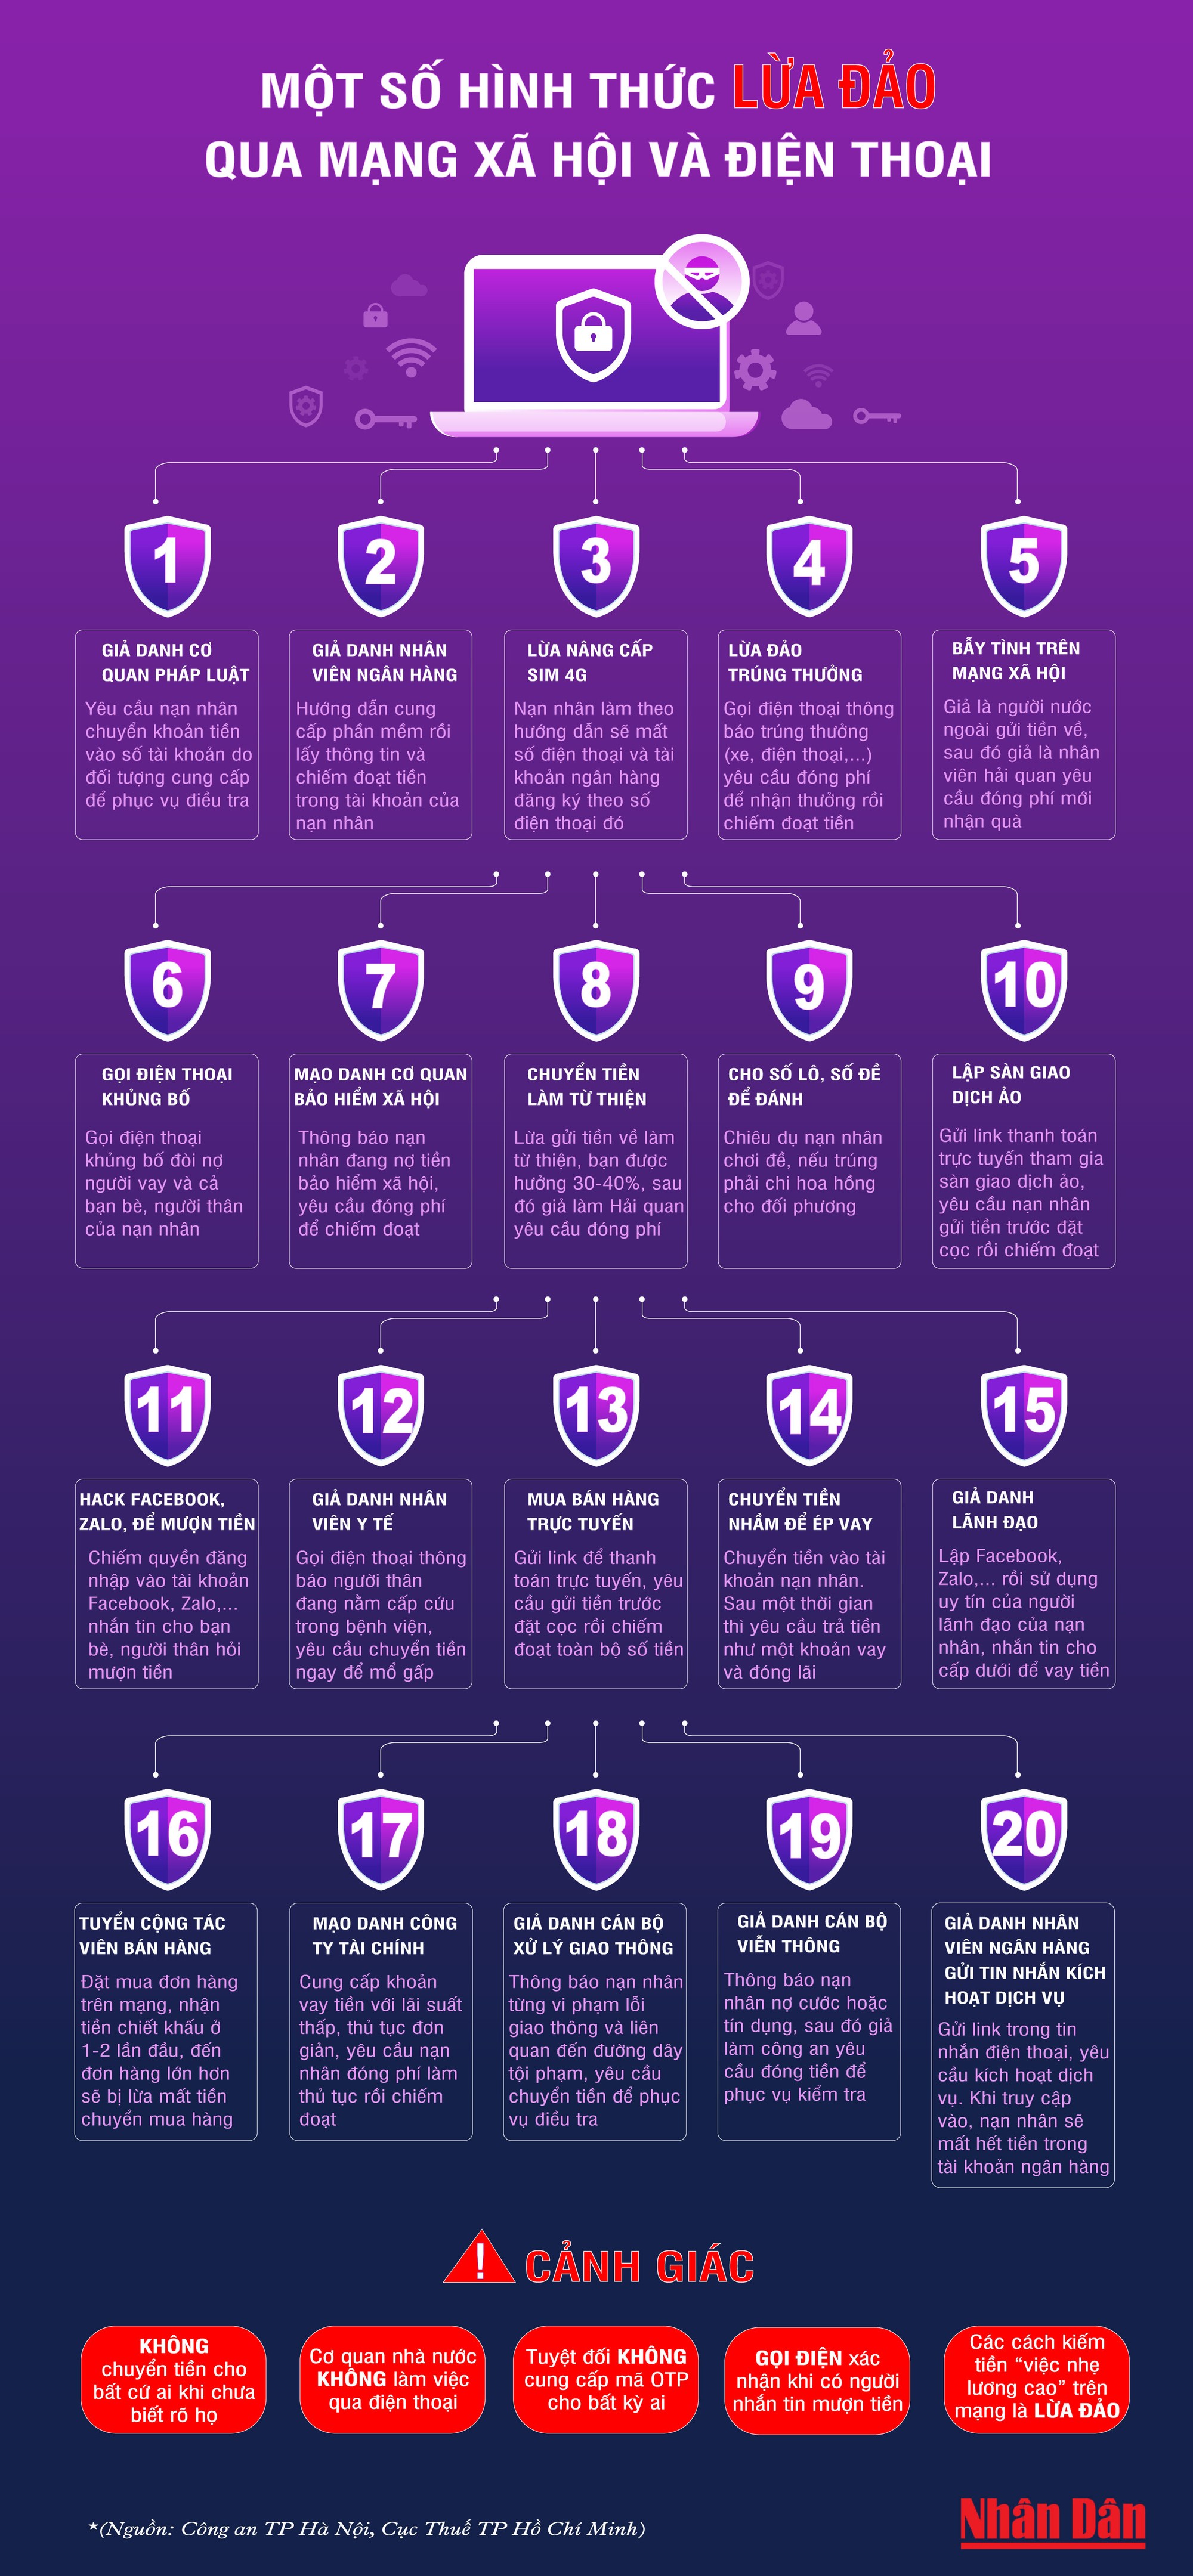 [Infographic] 20 hình thức lừa đảo qua mạng xã hội và điện thoại